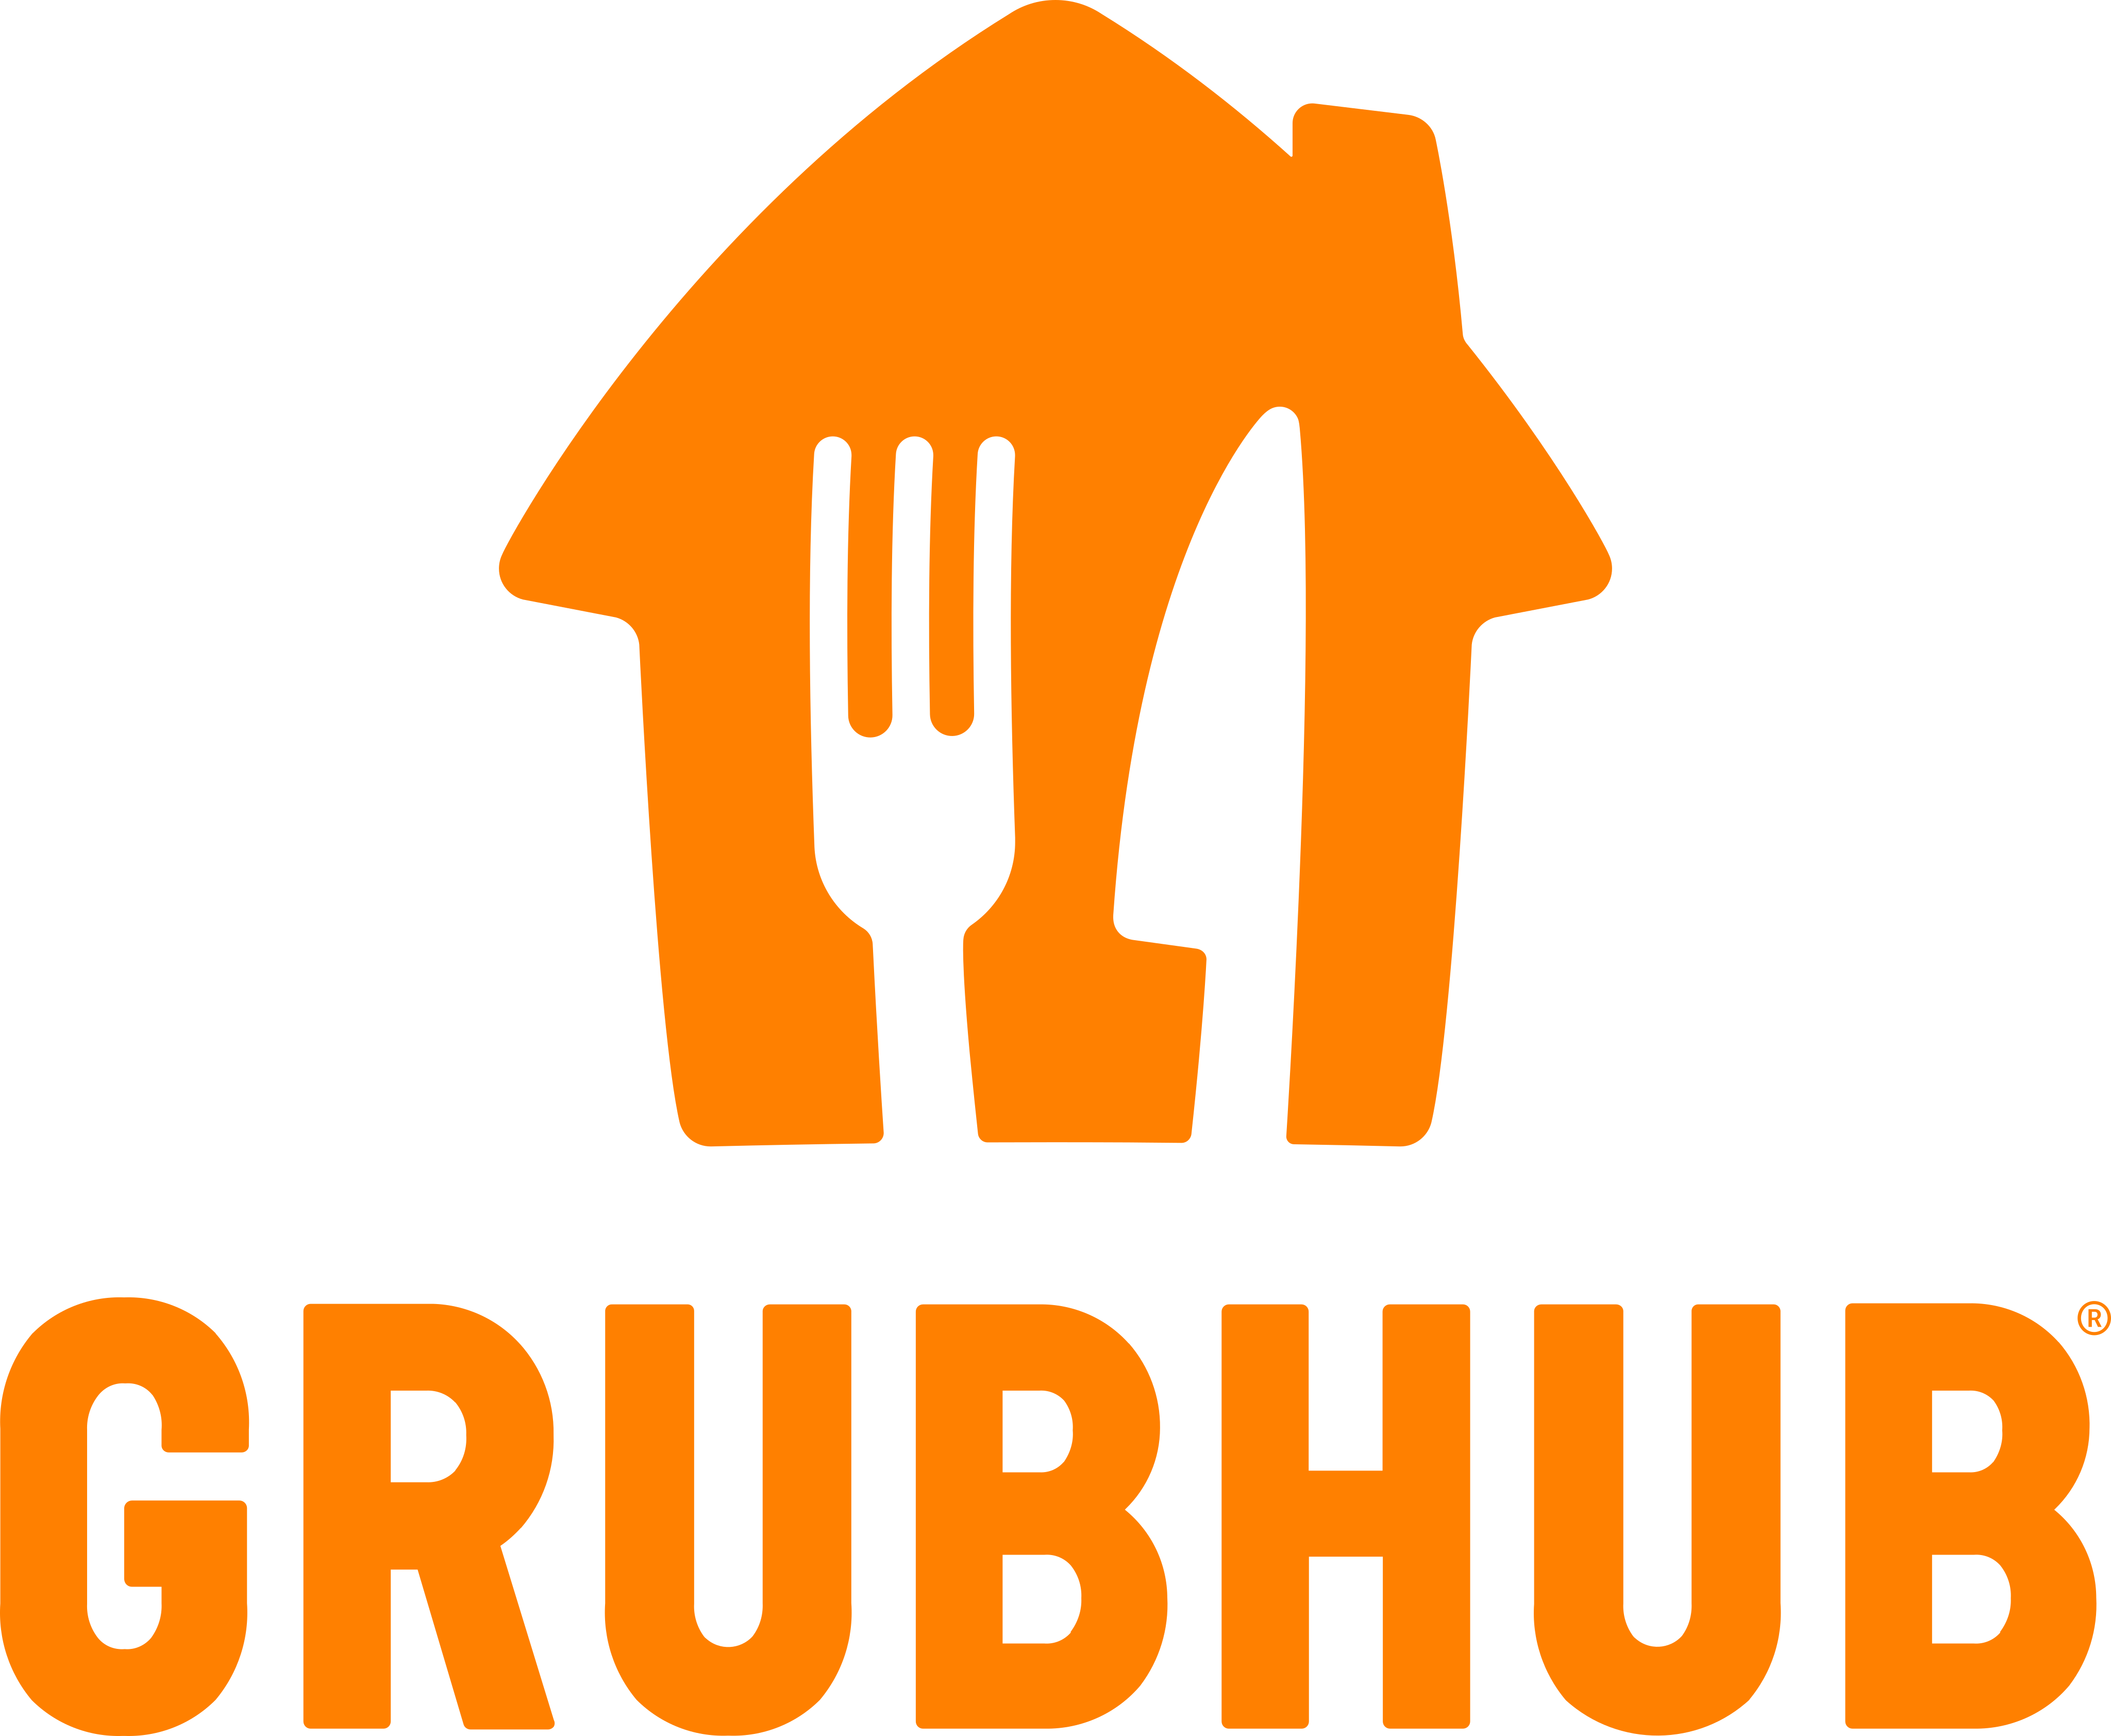 grubhub logo 1 - GrubHub Logo